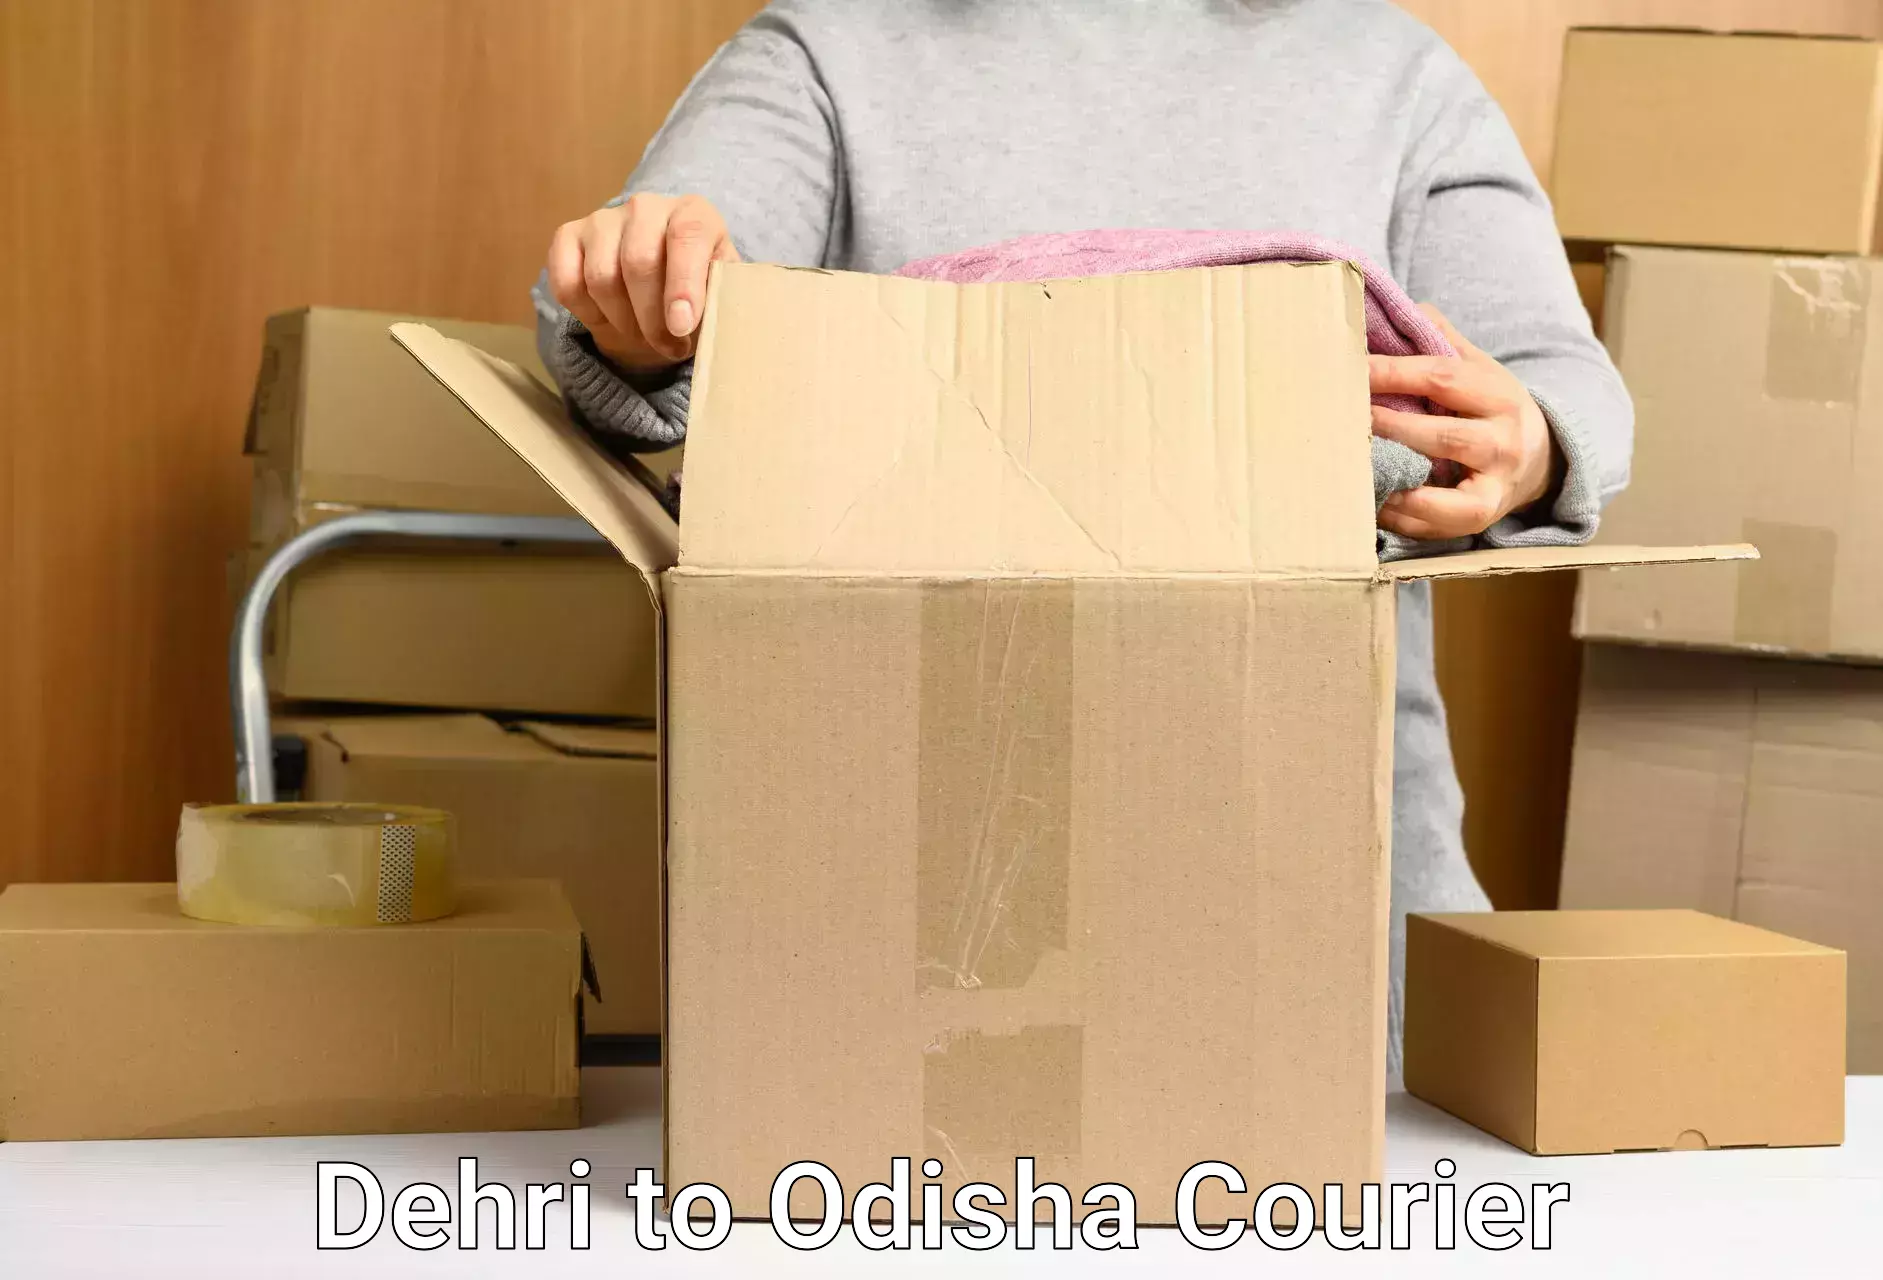 Local delivery service Dehri to Odisha